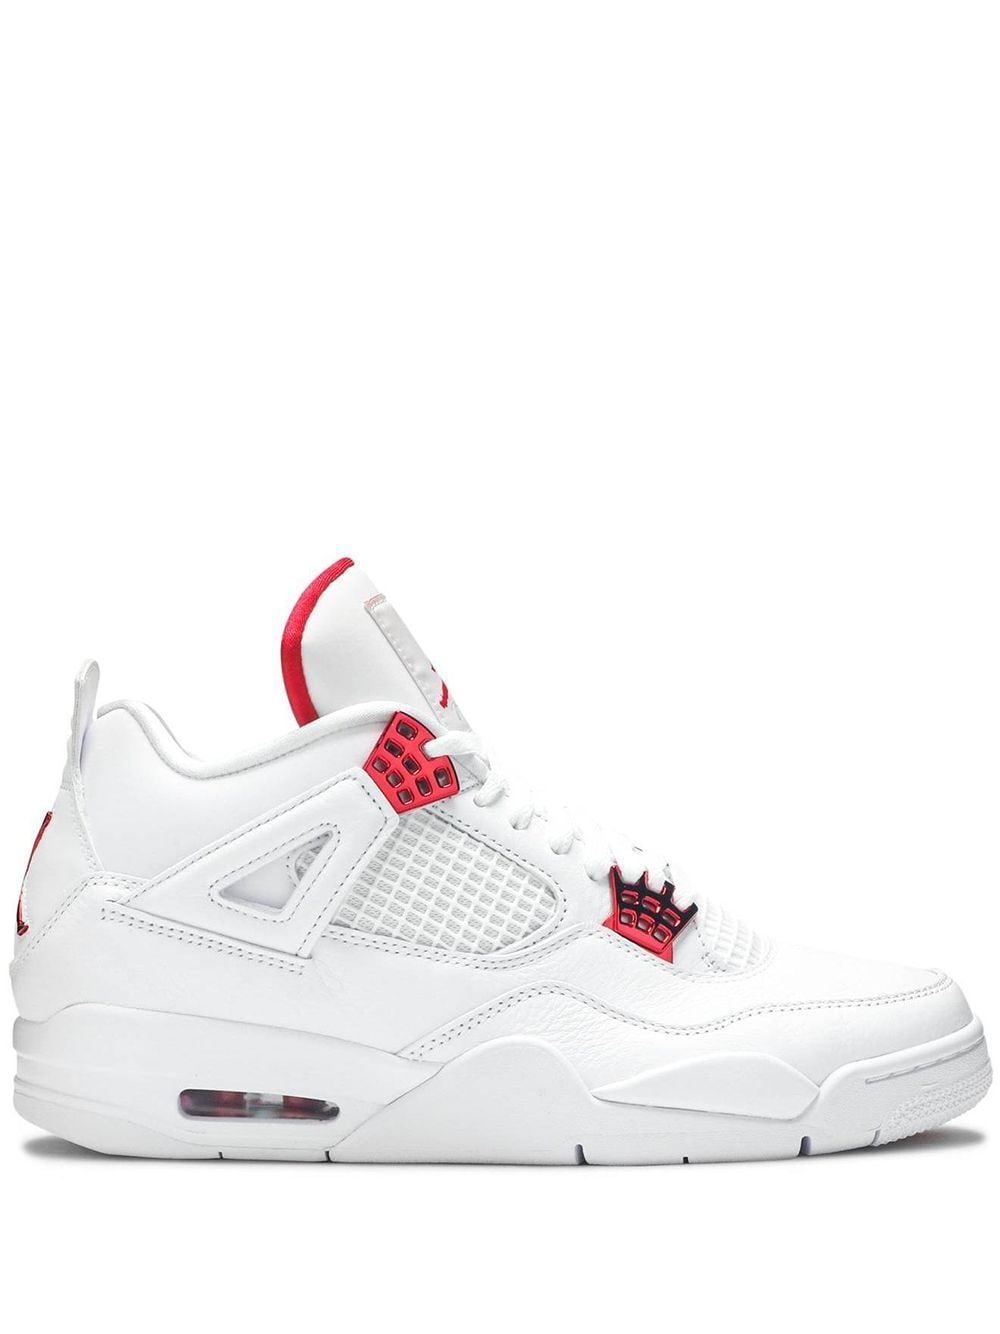 Jordan Air Jordan 4 Retro "Metallic Pack - University Red" sneakers - White von Jordan